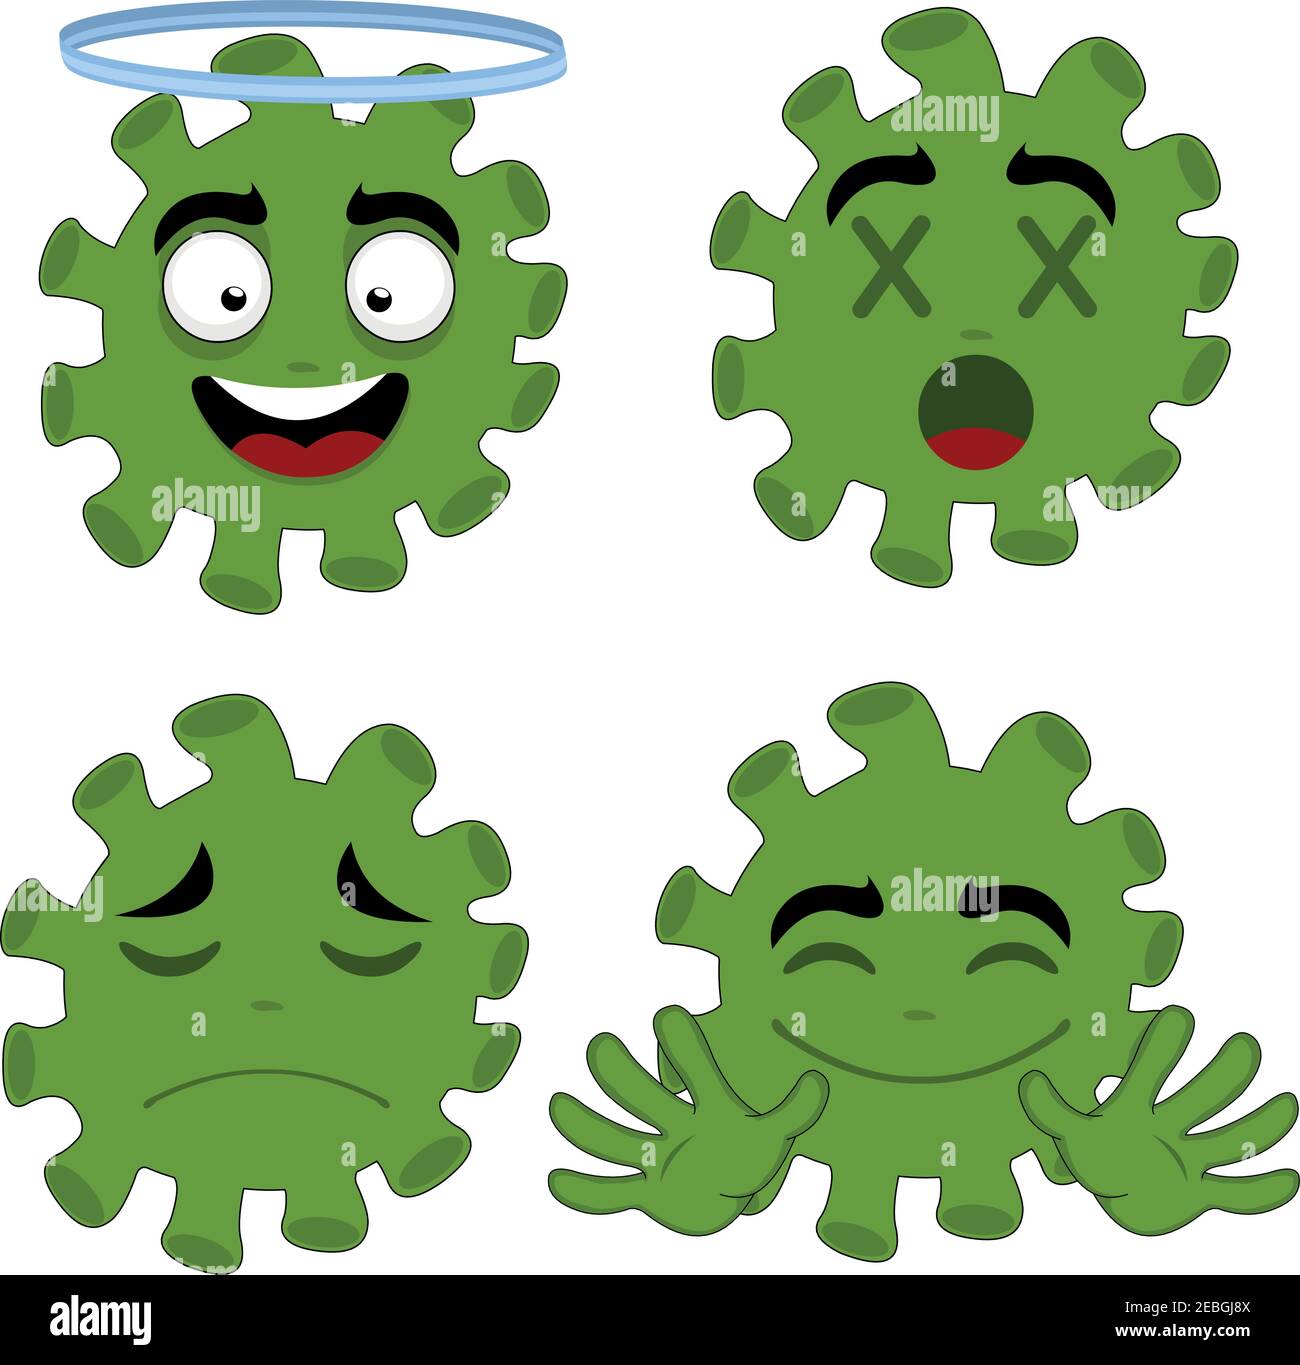 Illustrazione vettoriale delle emoticon dei cartoni animati di coronavirus Illustrazione Vettoriale